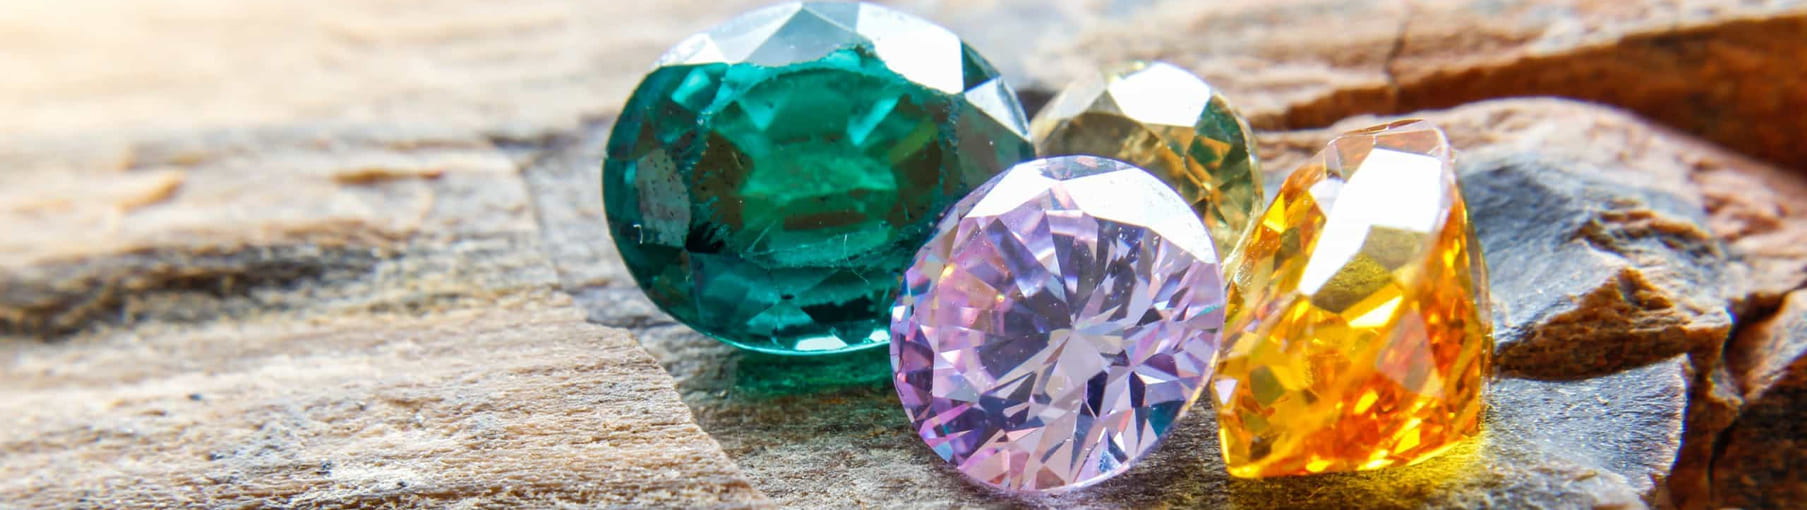 Самые редкие камни в мире – ТОП 10 минералов и камней